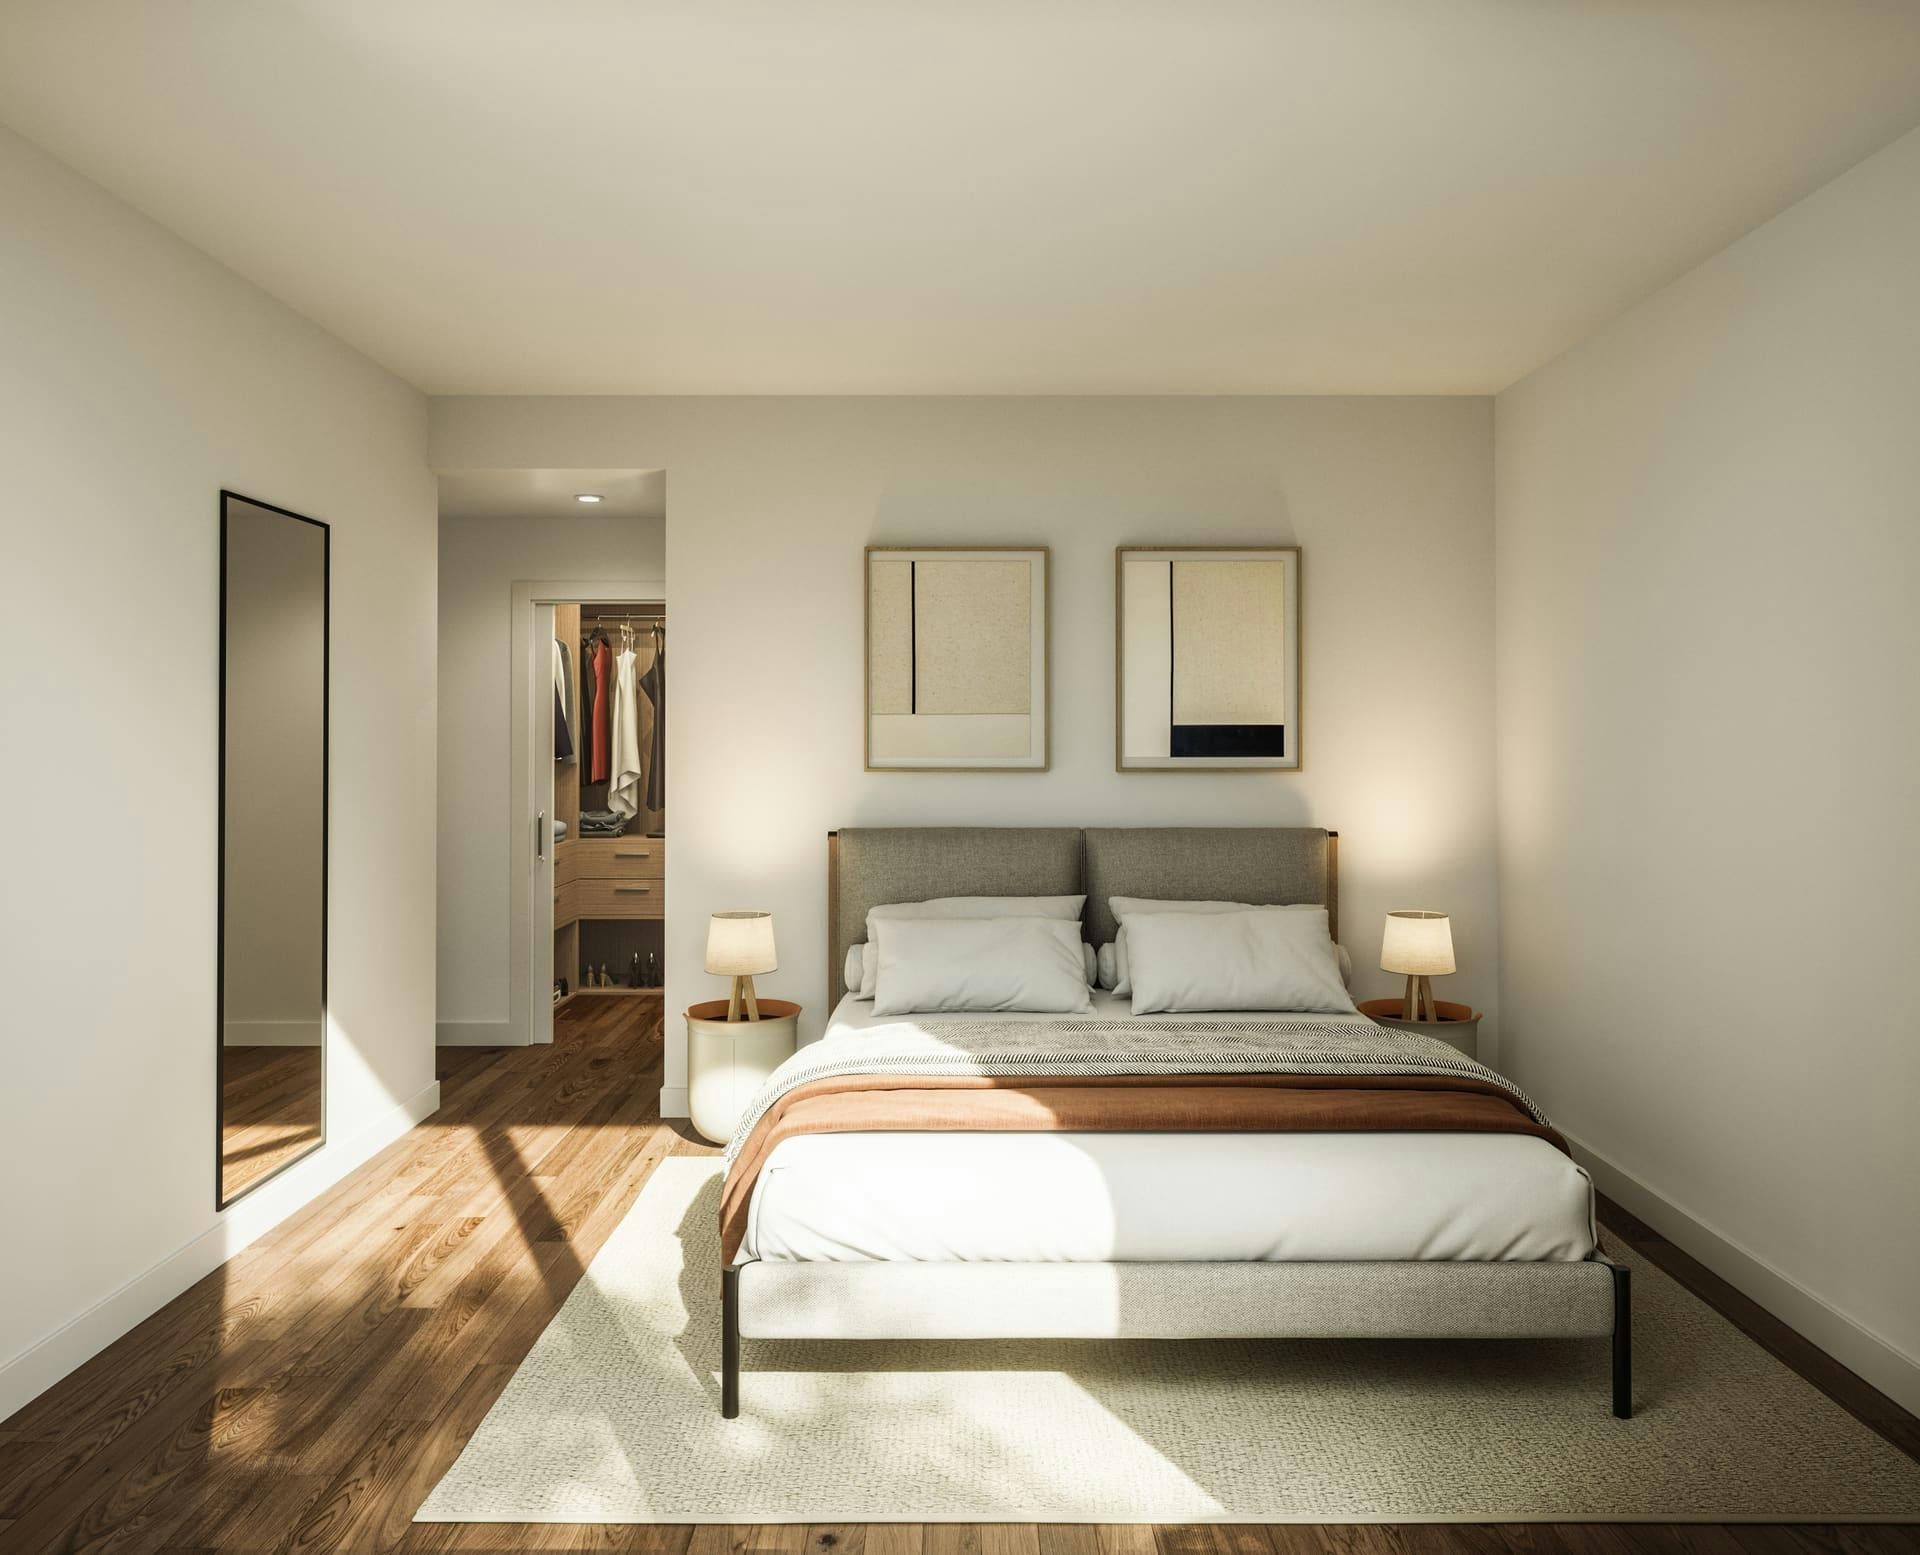 Imagen /content/san-nikolas-getxo/Dormitorio P1 nuevo_Vista_interior_Final.jpg del proyecto San Nikolas